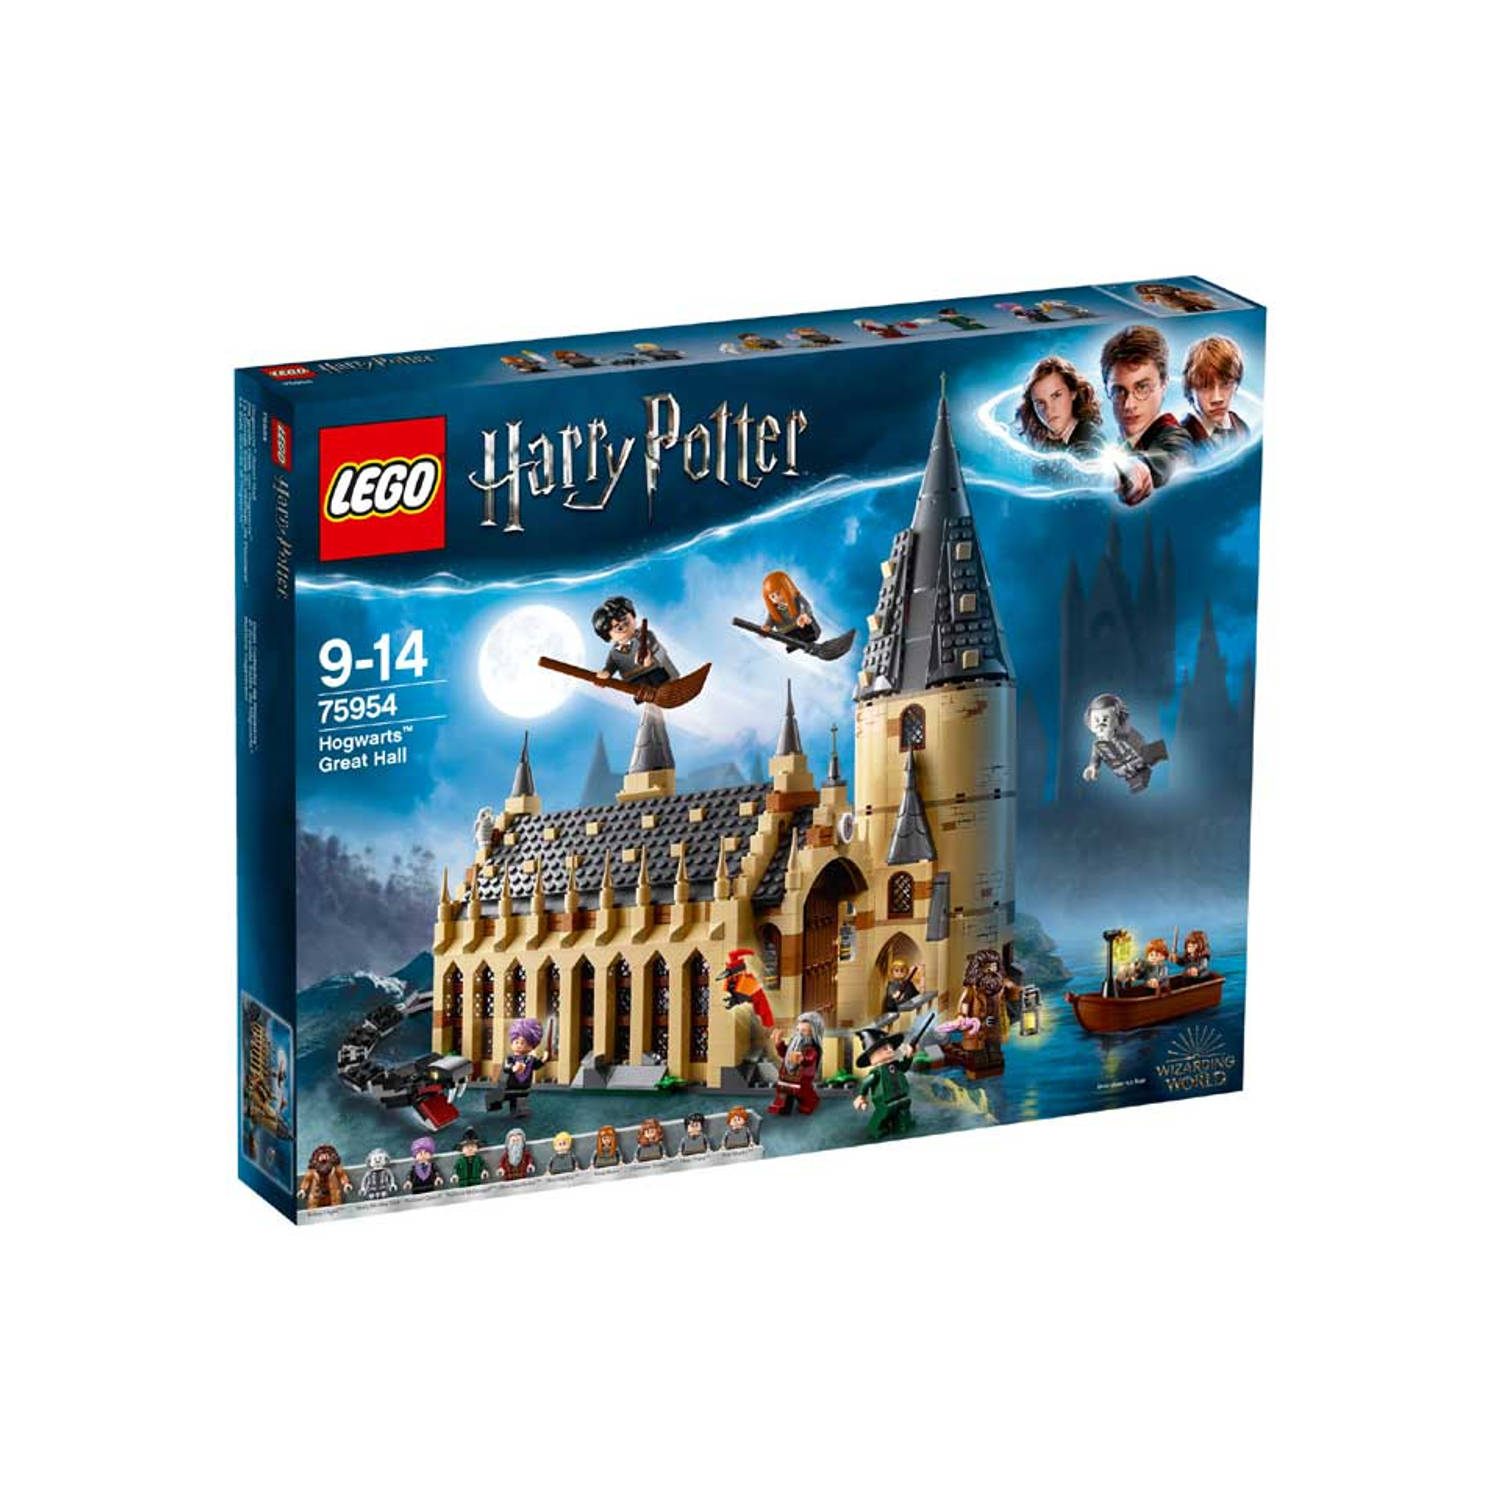 LEGO Harry Potter De Grote Zaal van Zweinstein - 75954